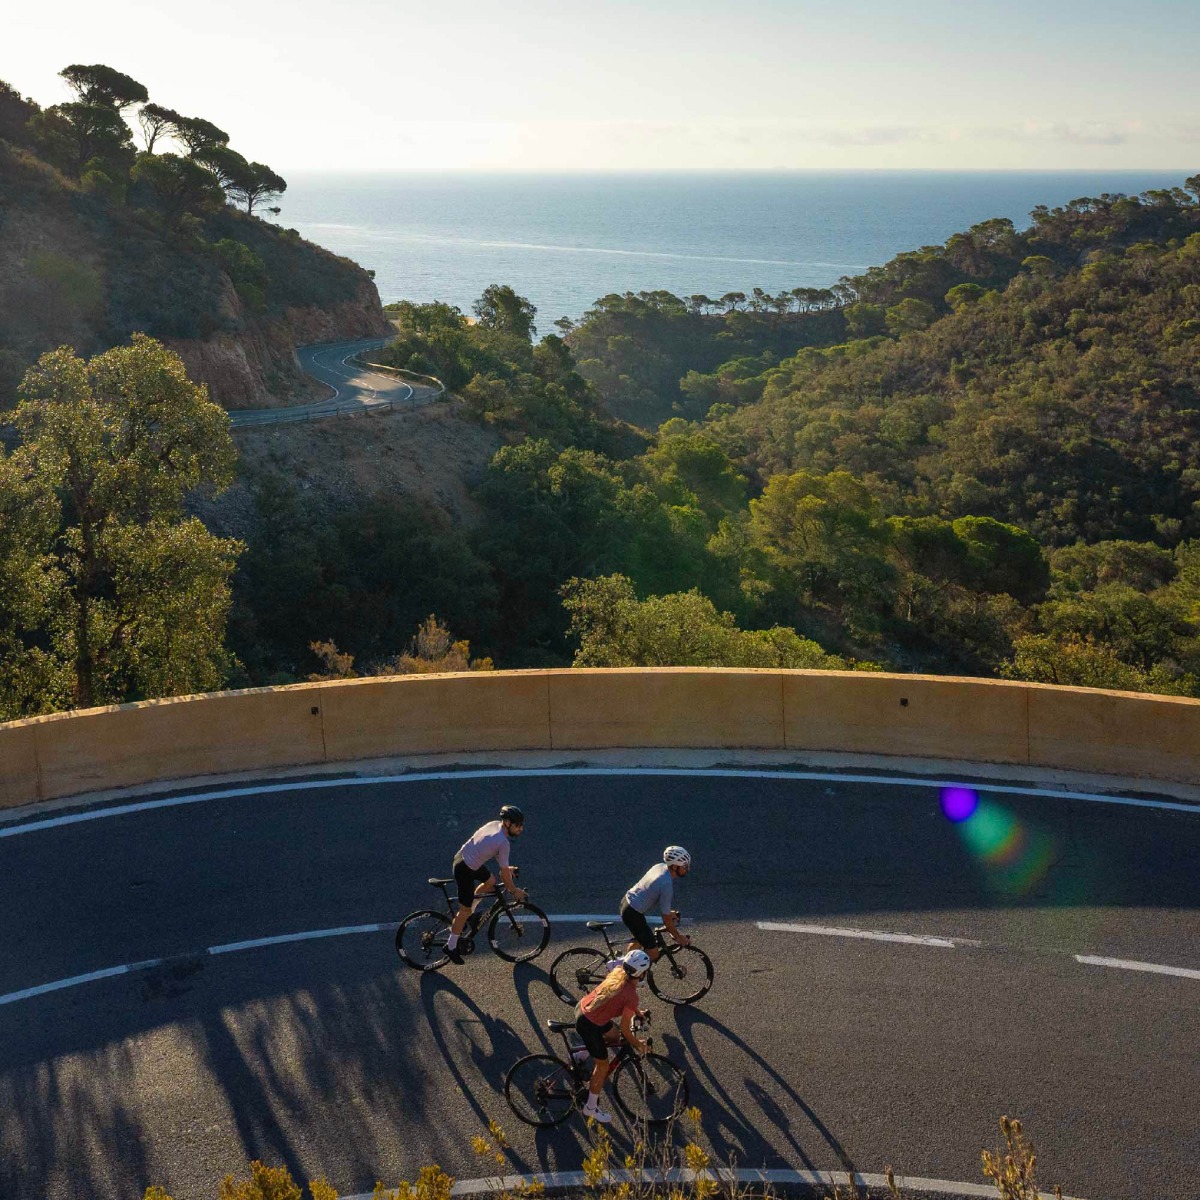 Twee fietsers beklimmen een steile helling met de glinsterende Middellandse Zee op de achtergrond, omringd door de adembenemende schoonheid van de Costa Brava.